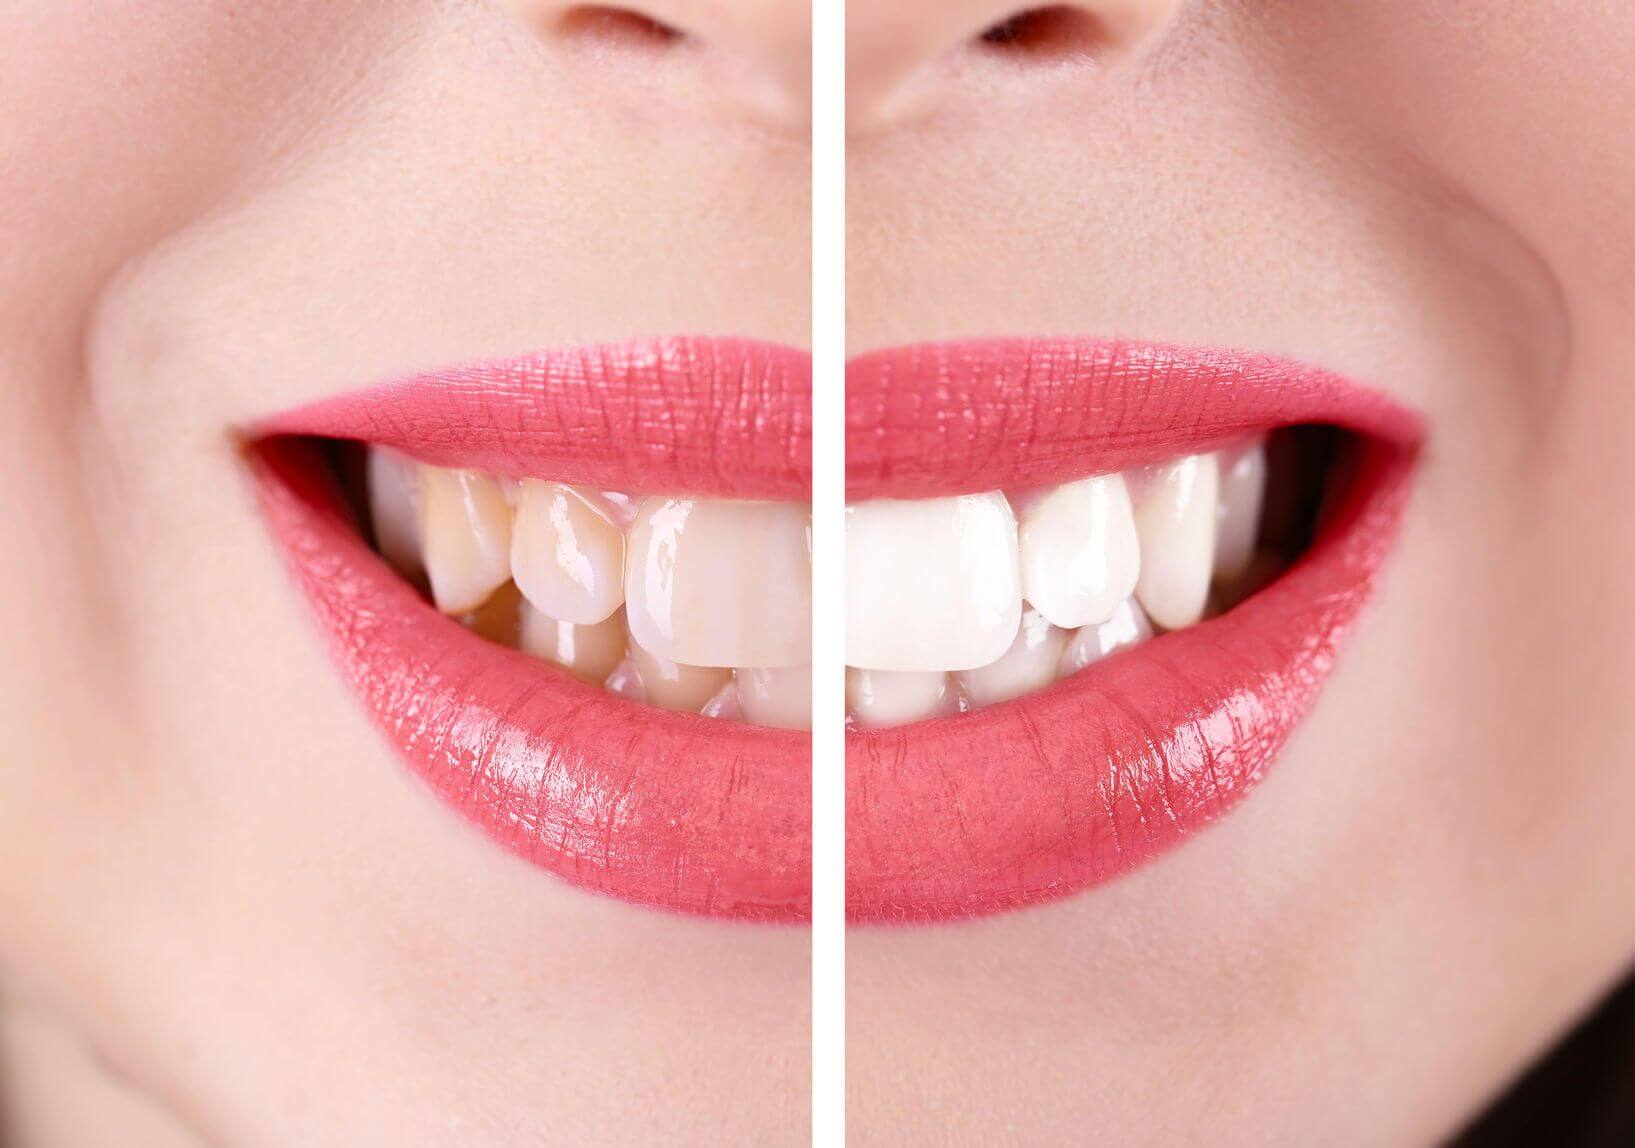 types-of-dental-veneers-composite-veneers-vs-porcelain-veneers